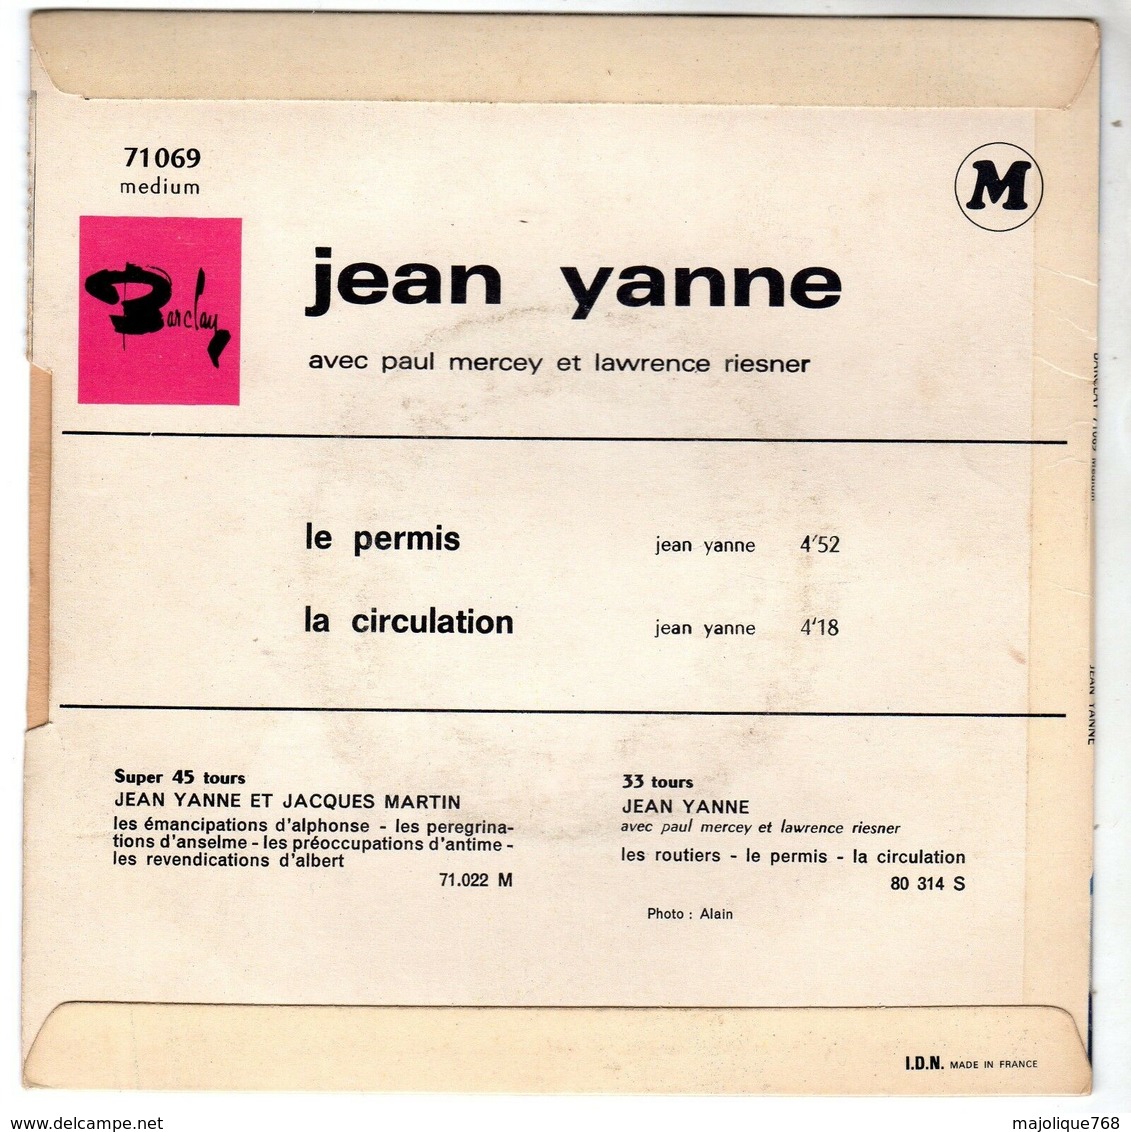 Disque De Jean Yanne - Le Permis - Barclay 71069 M - 1967 - - Humour, Cabaret